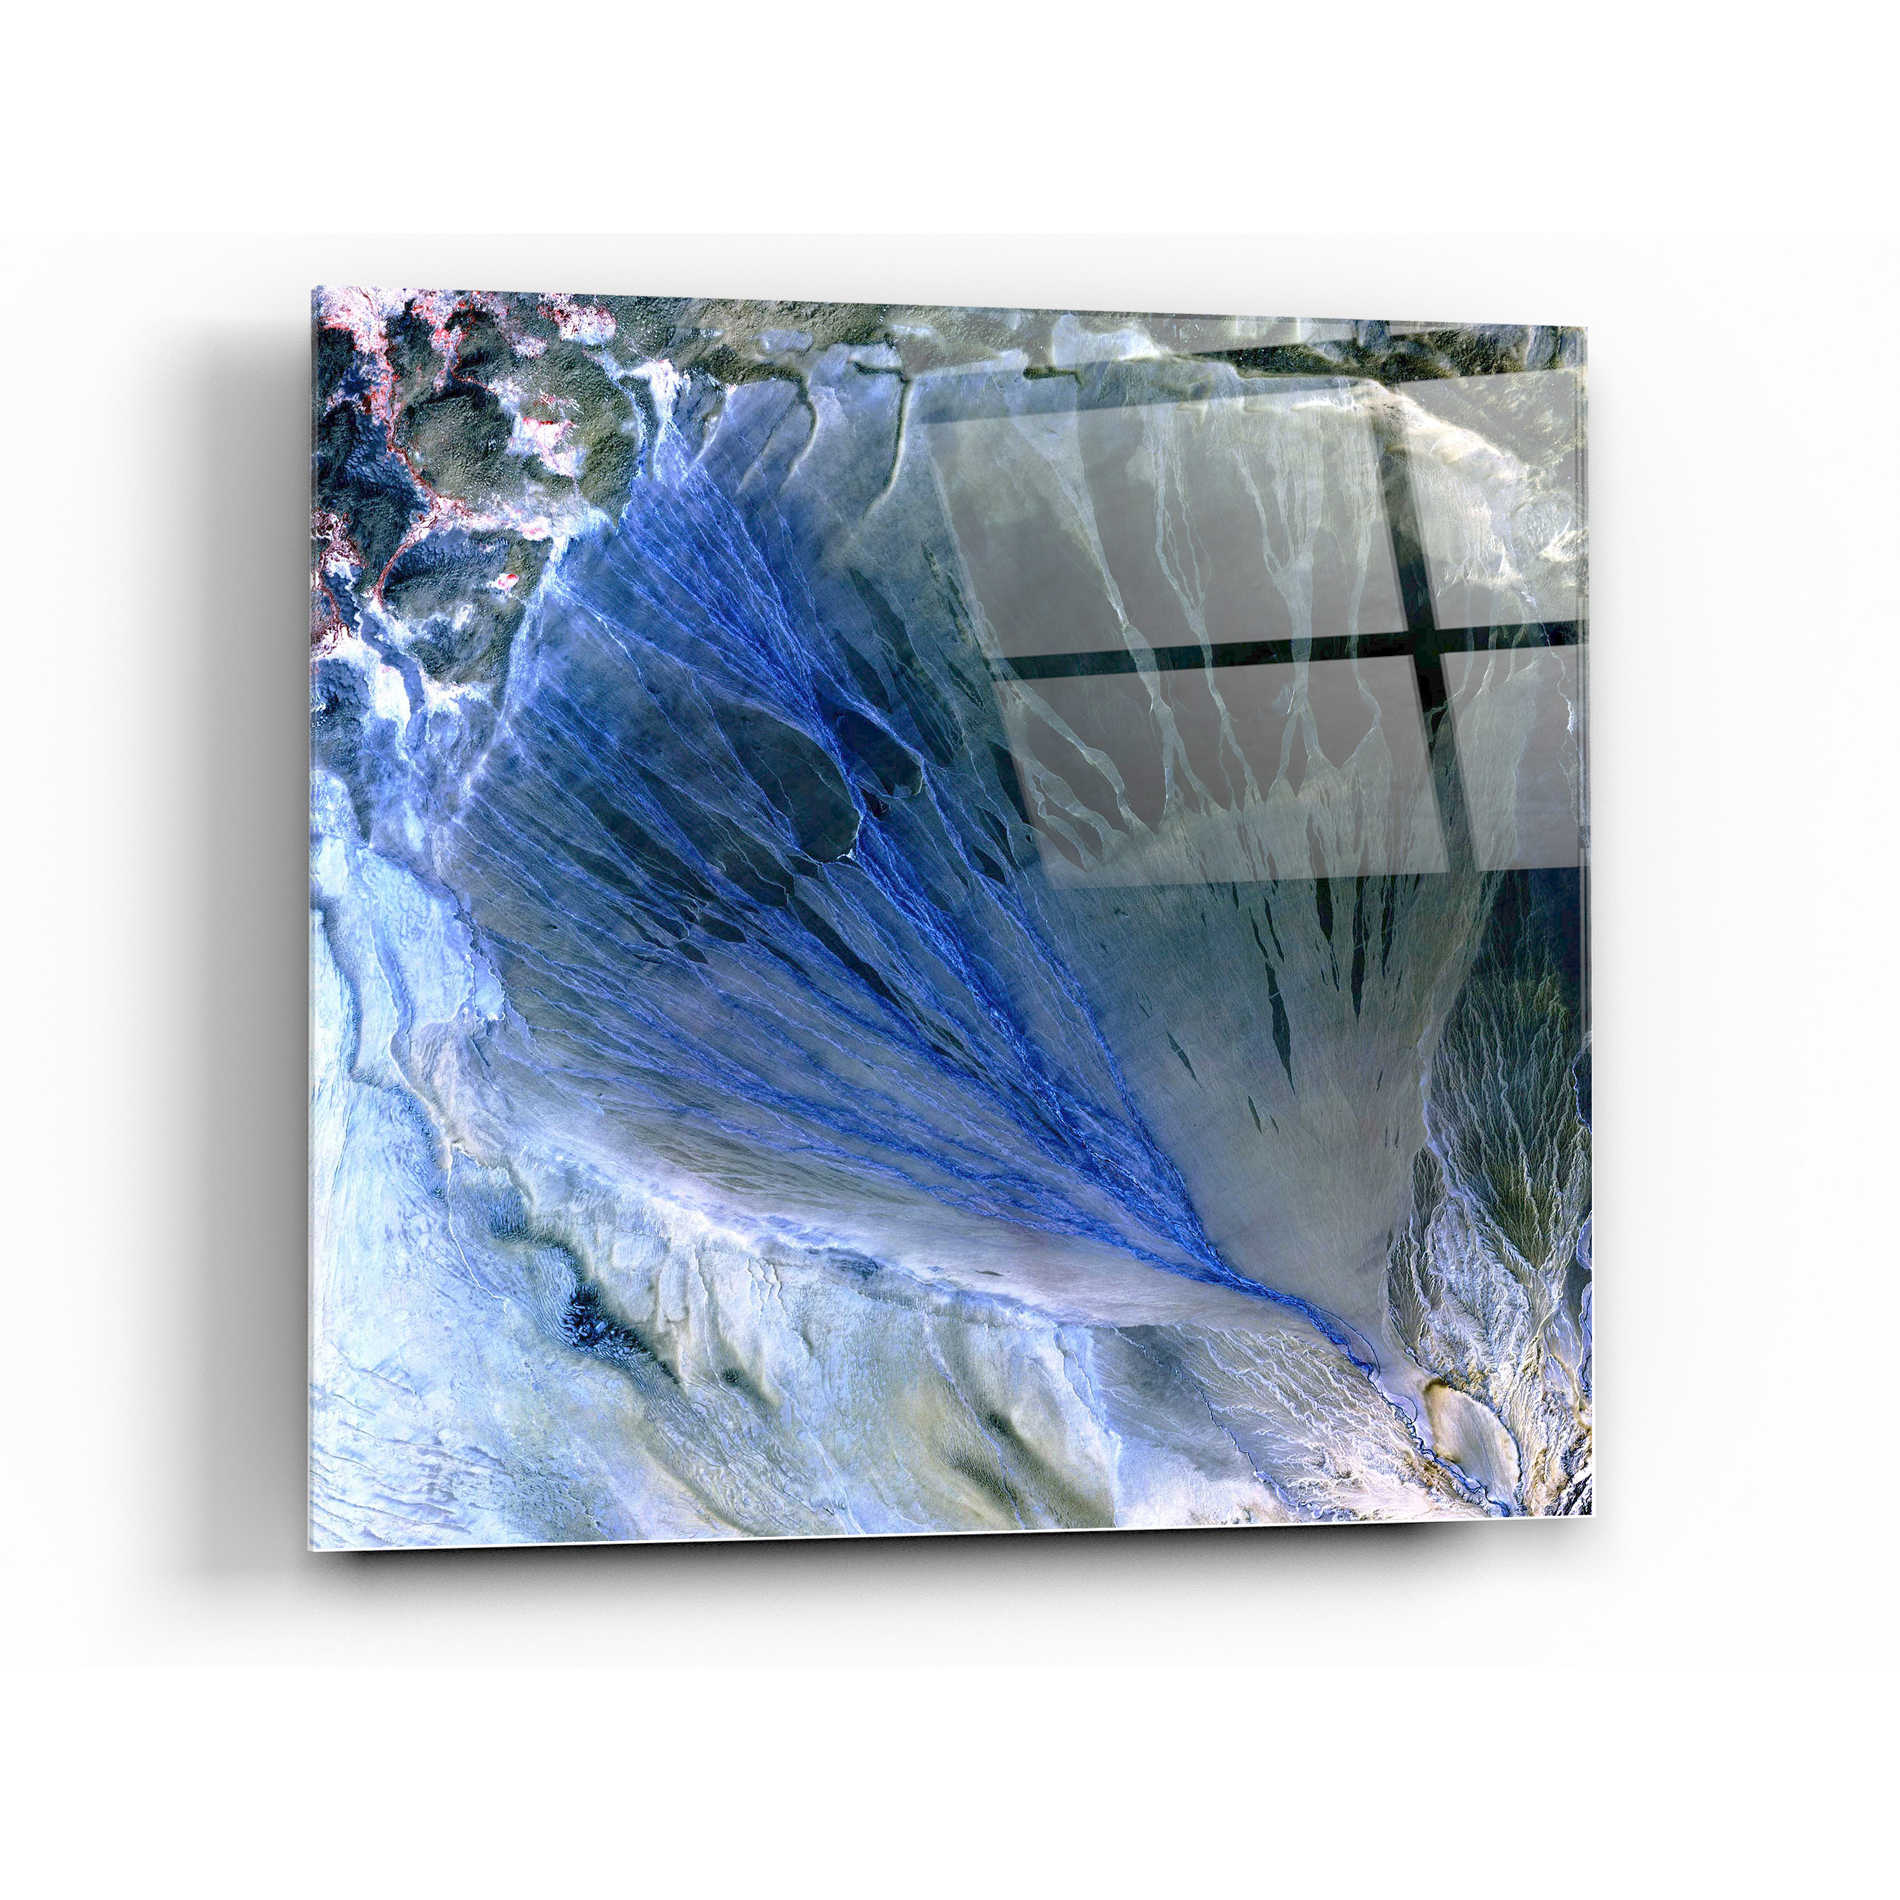 Epic Art 'Earth As Art: Alluvial Fan' Acrylic Glass Wall Art,36x36